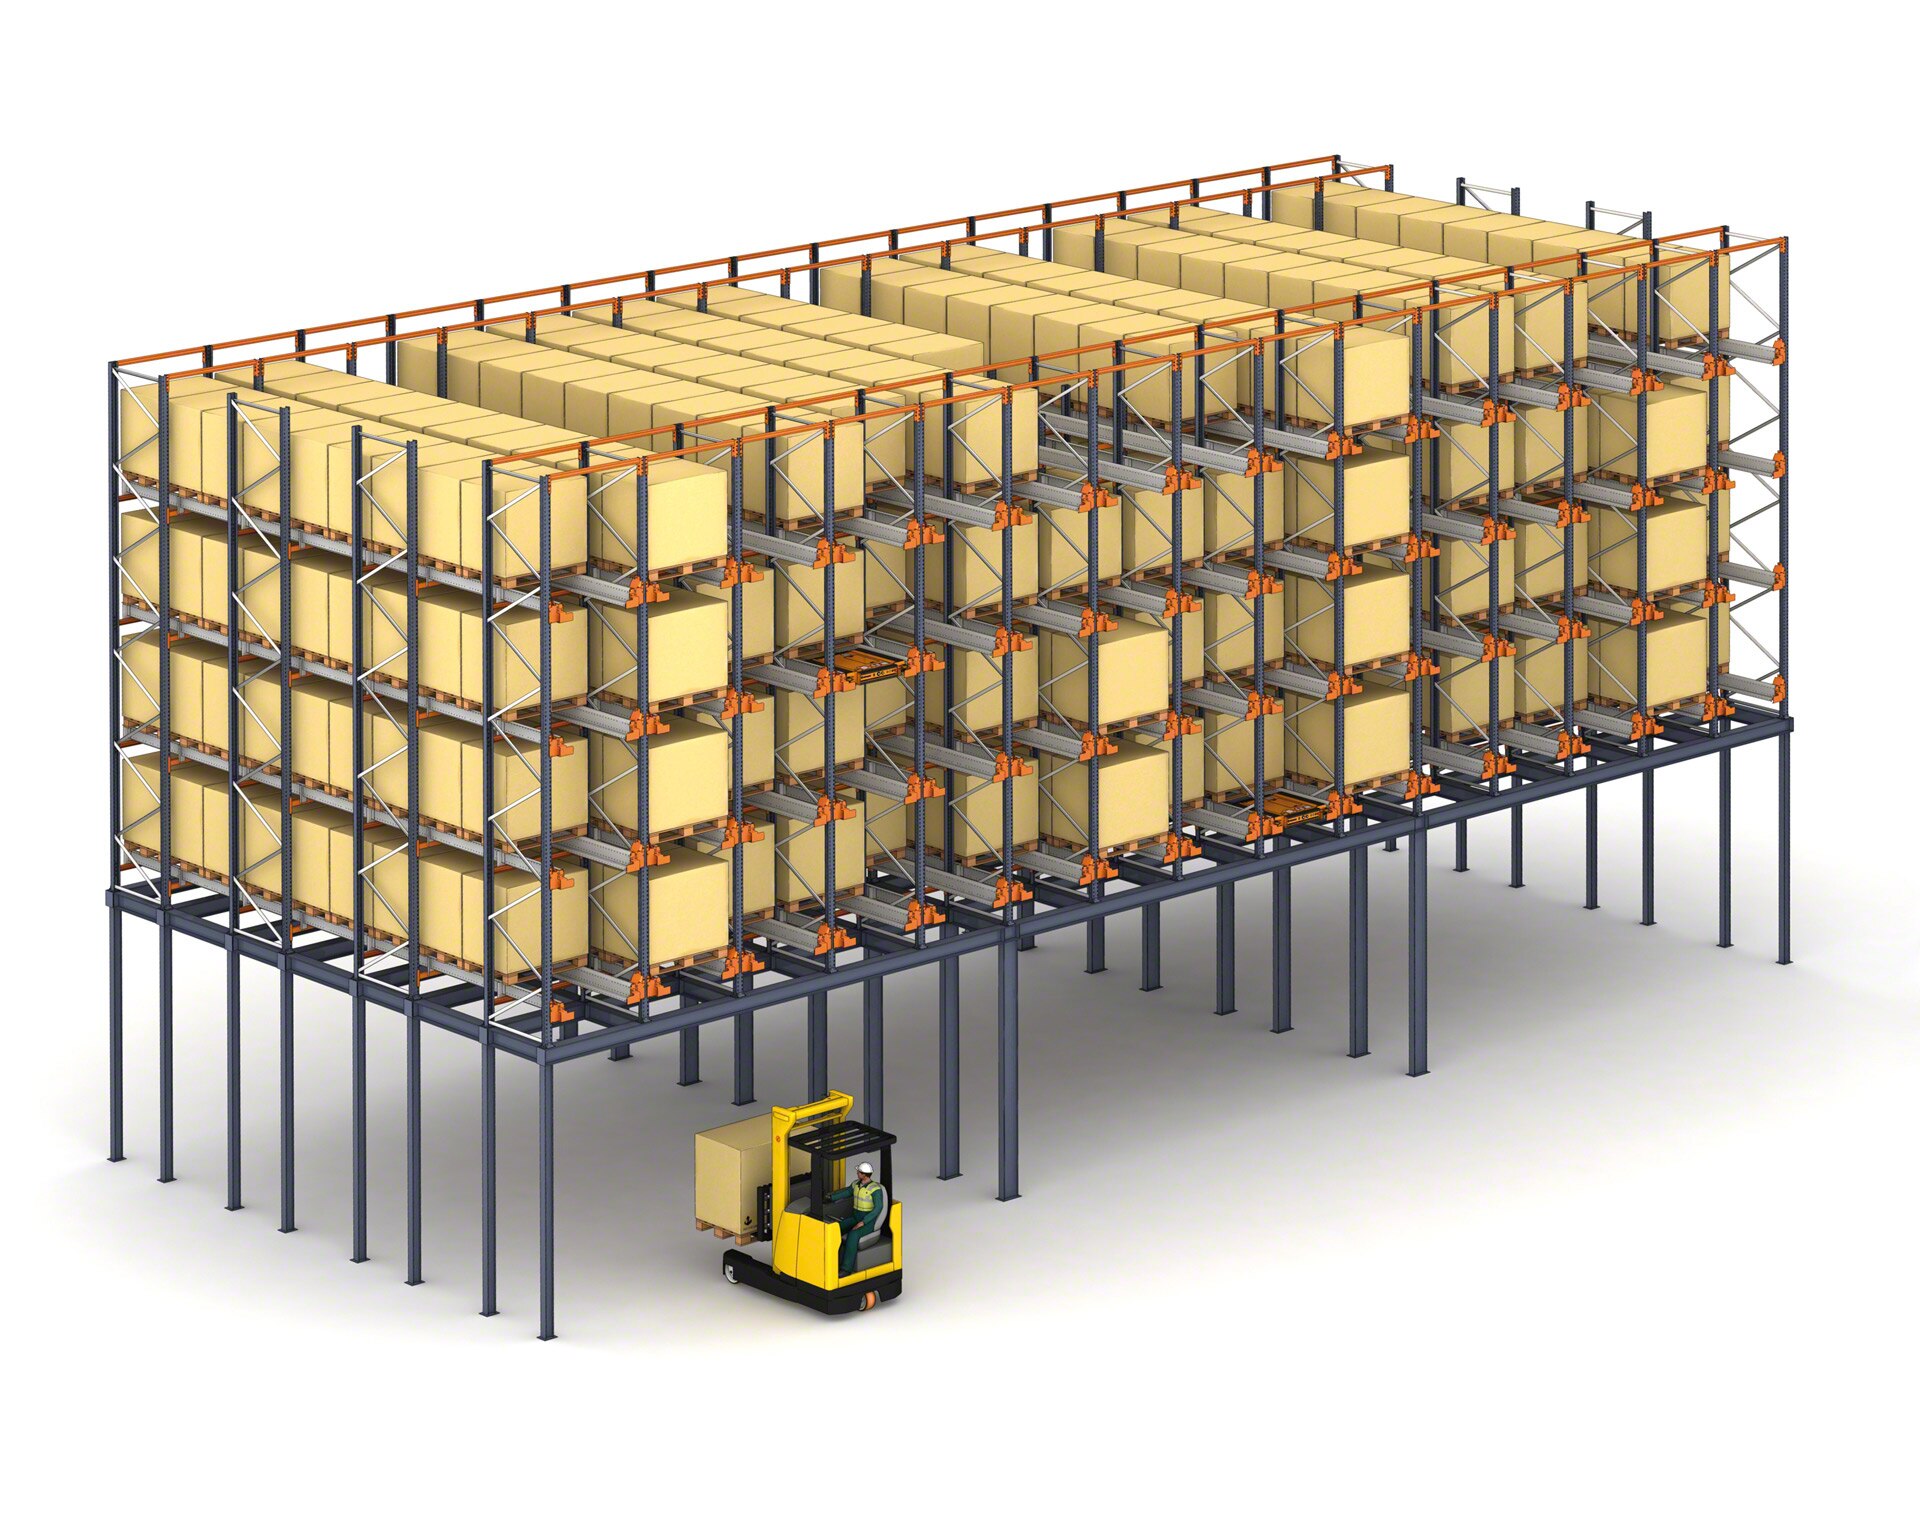 En almacenes de espacio reducido, se puede colocar el sistema Pallet Shuttle en un mezzanine estructural para aprovechar la superficie